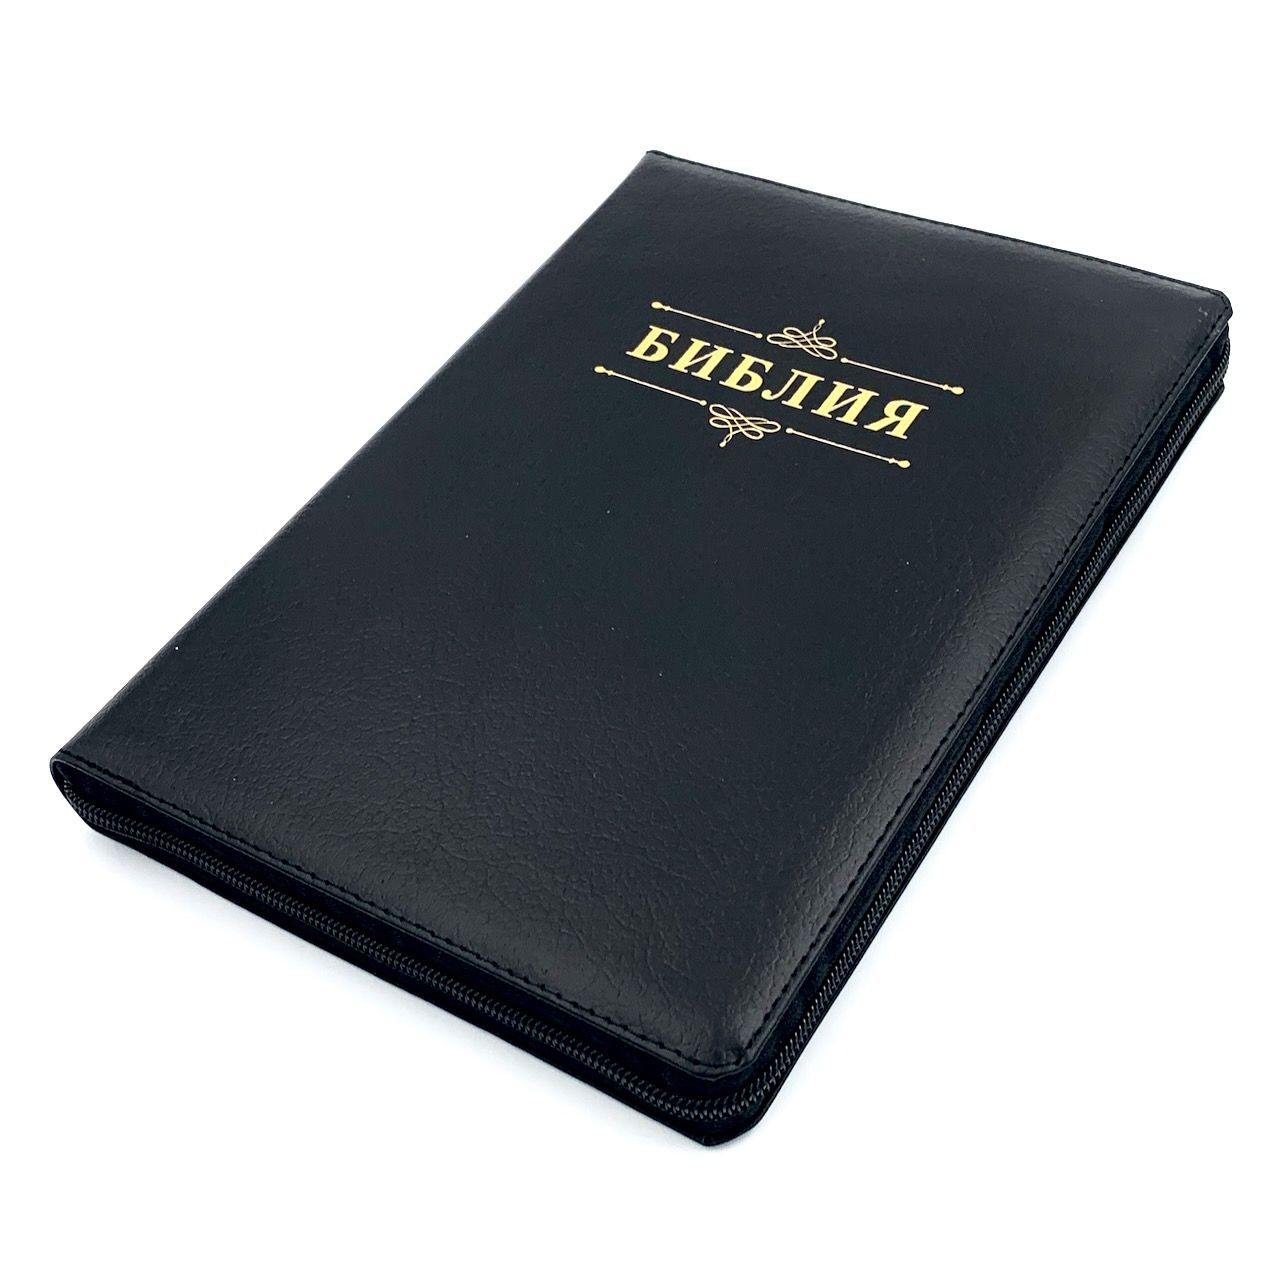 Библия 076zti код 23076-4, дизайн "слово Библия", кожаный переплет на молнии с индексами, цвет черный пятнистый, размер 180x243 мм